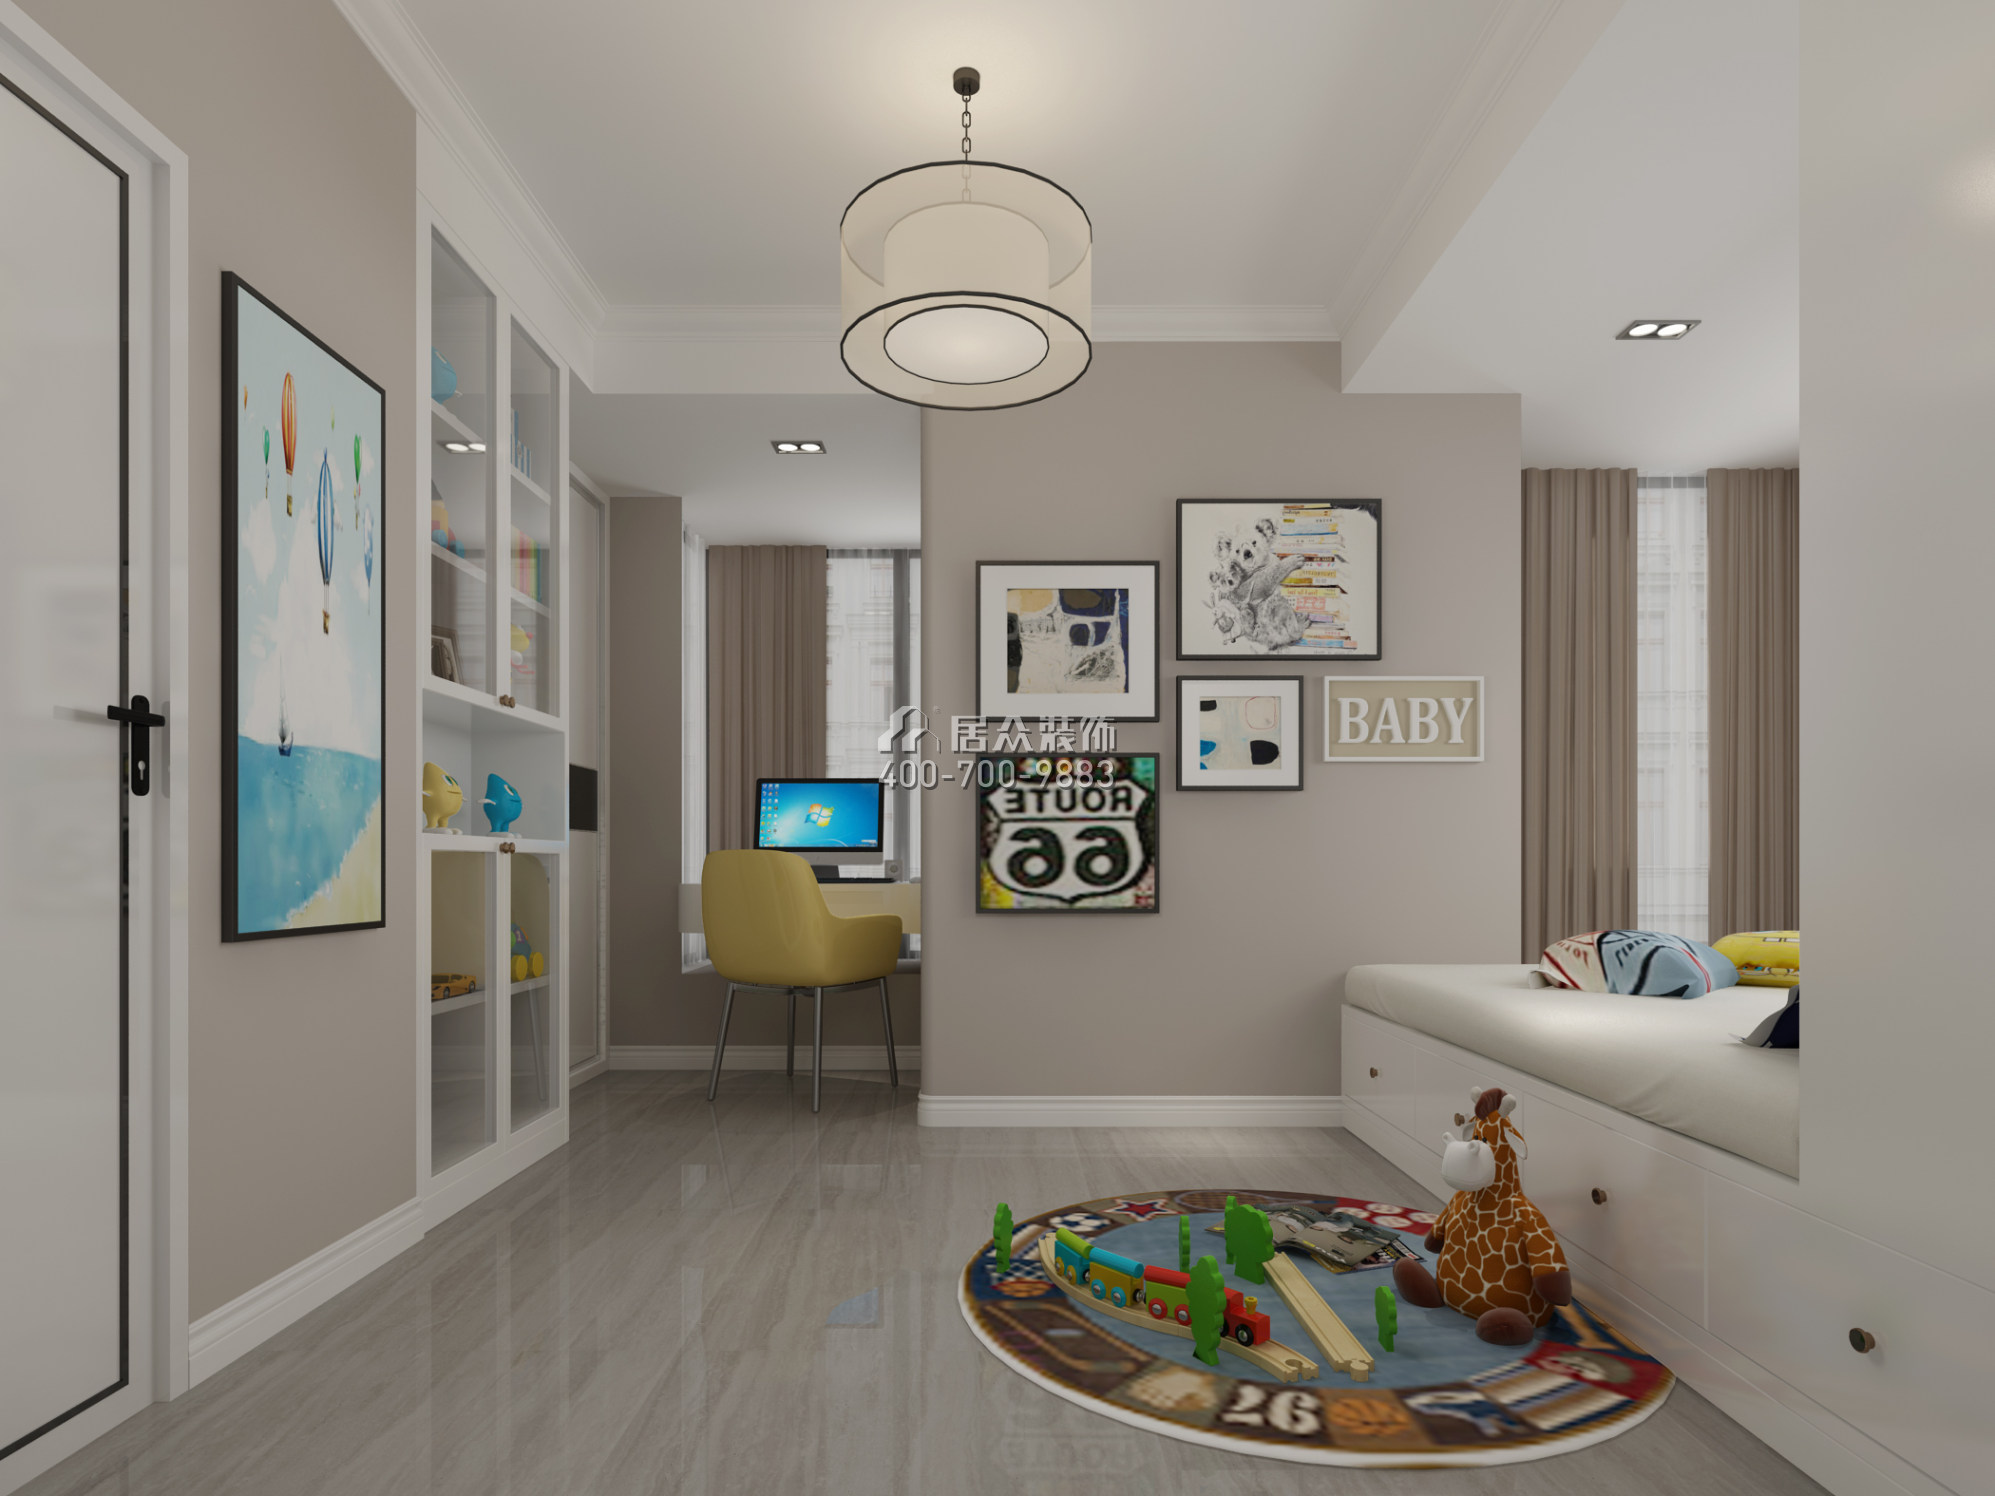 晨暉家園89平方米現代簡約風格平層戶型兒童房裝修效果圖